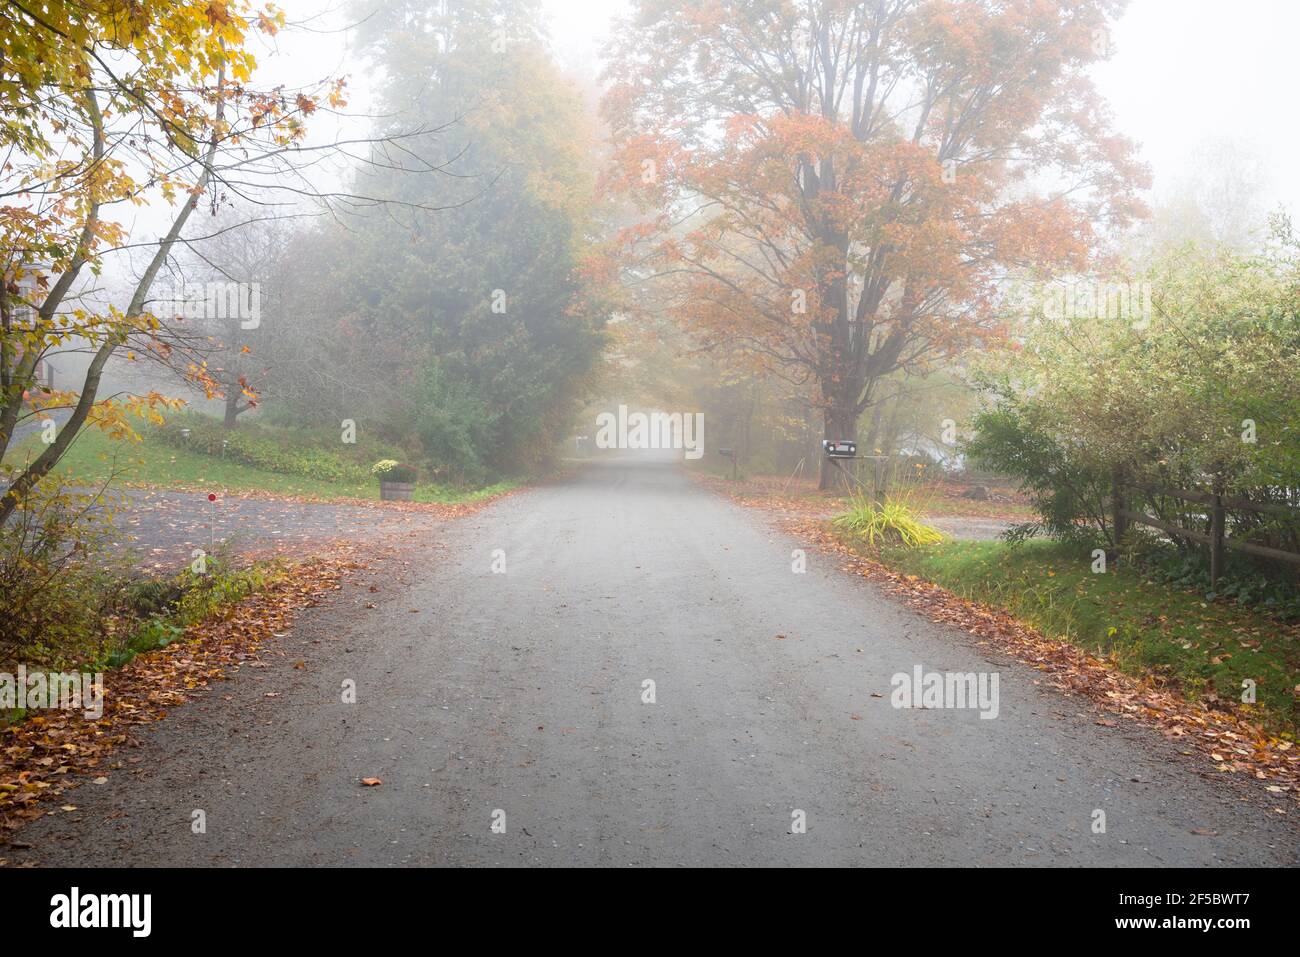 Menschenleere, von Bäumen gesäumte, unbefestigte Landstraße, die im Herbst von kaltem Morgennebel umhüllt ist. Herbstlaub. Stockfoto